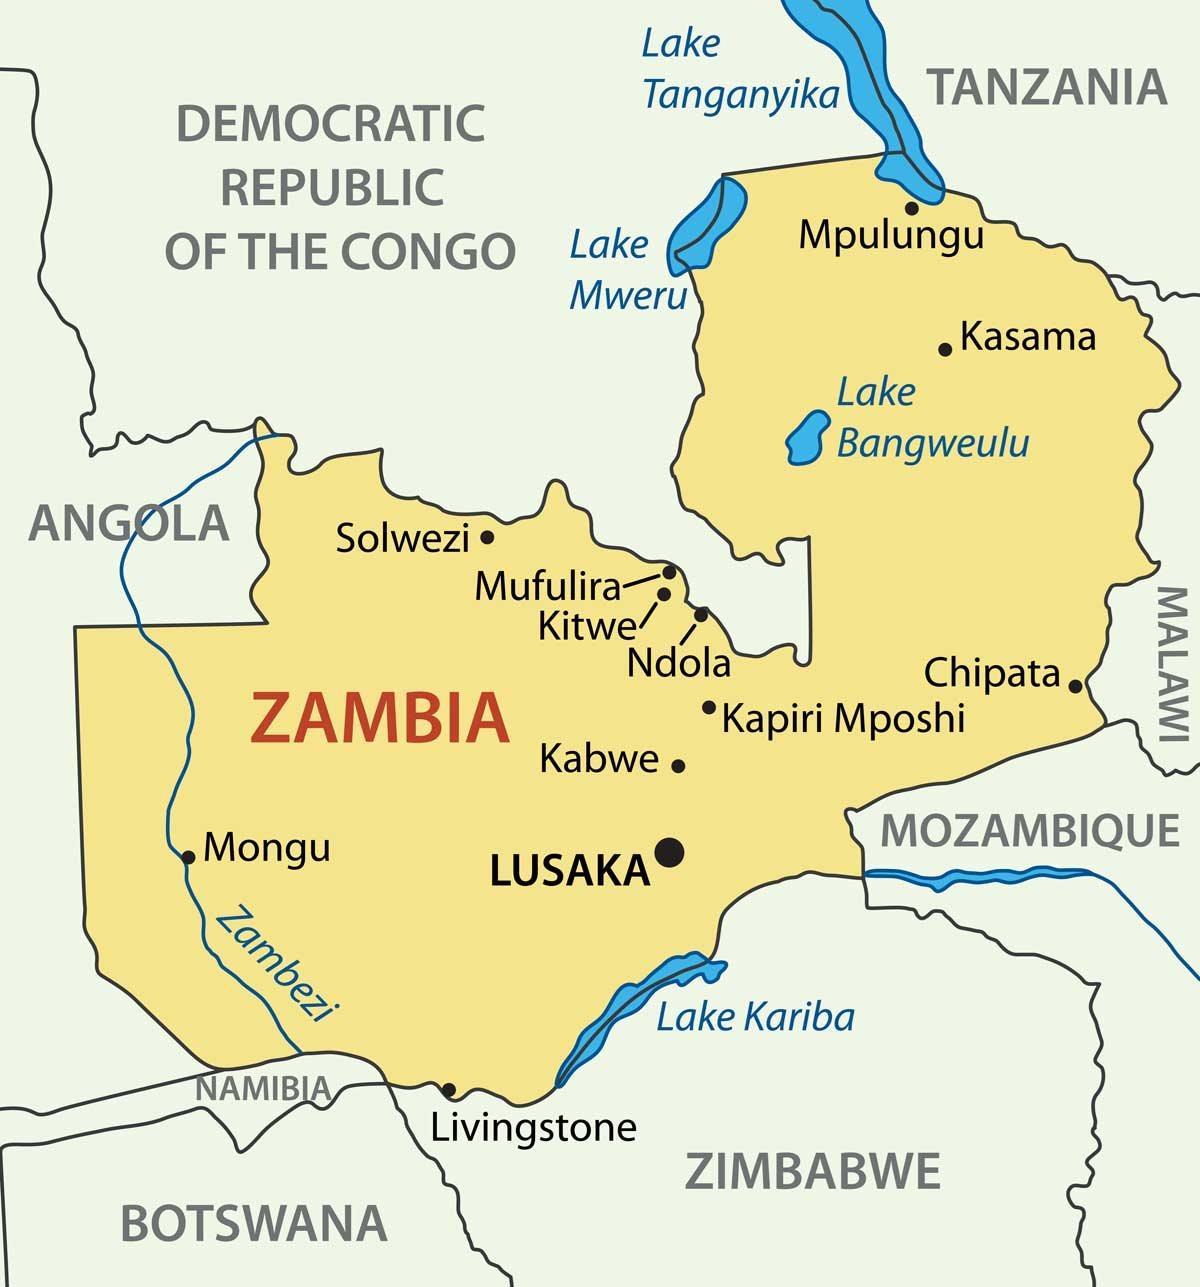 Mapa Zambia, китве 